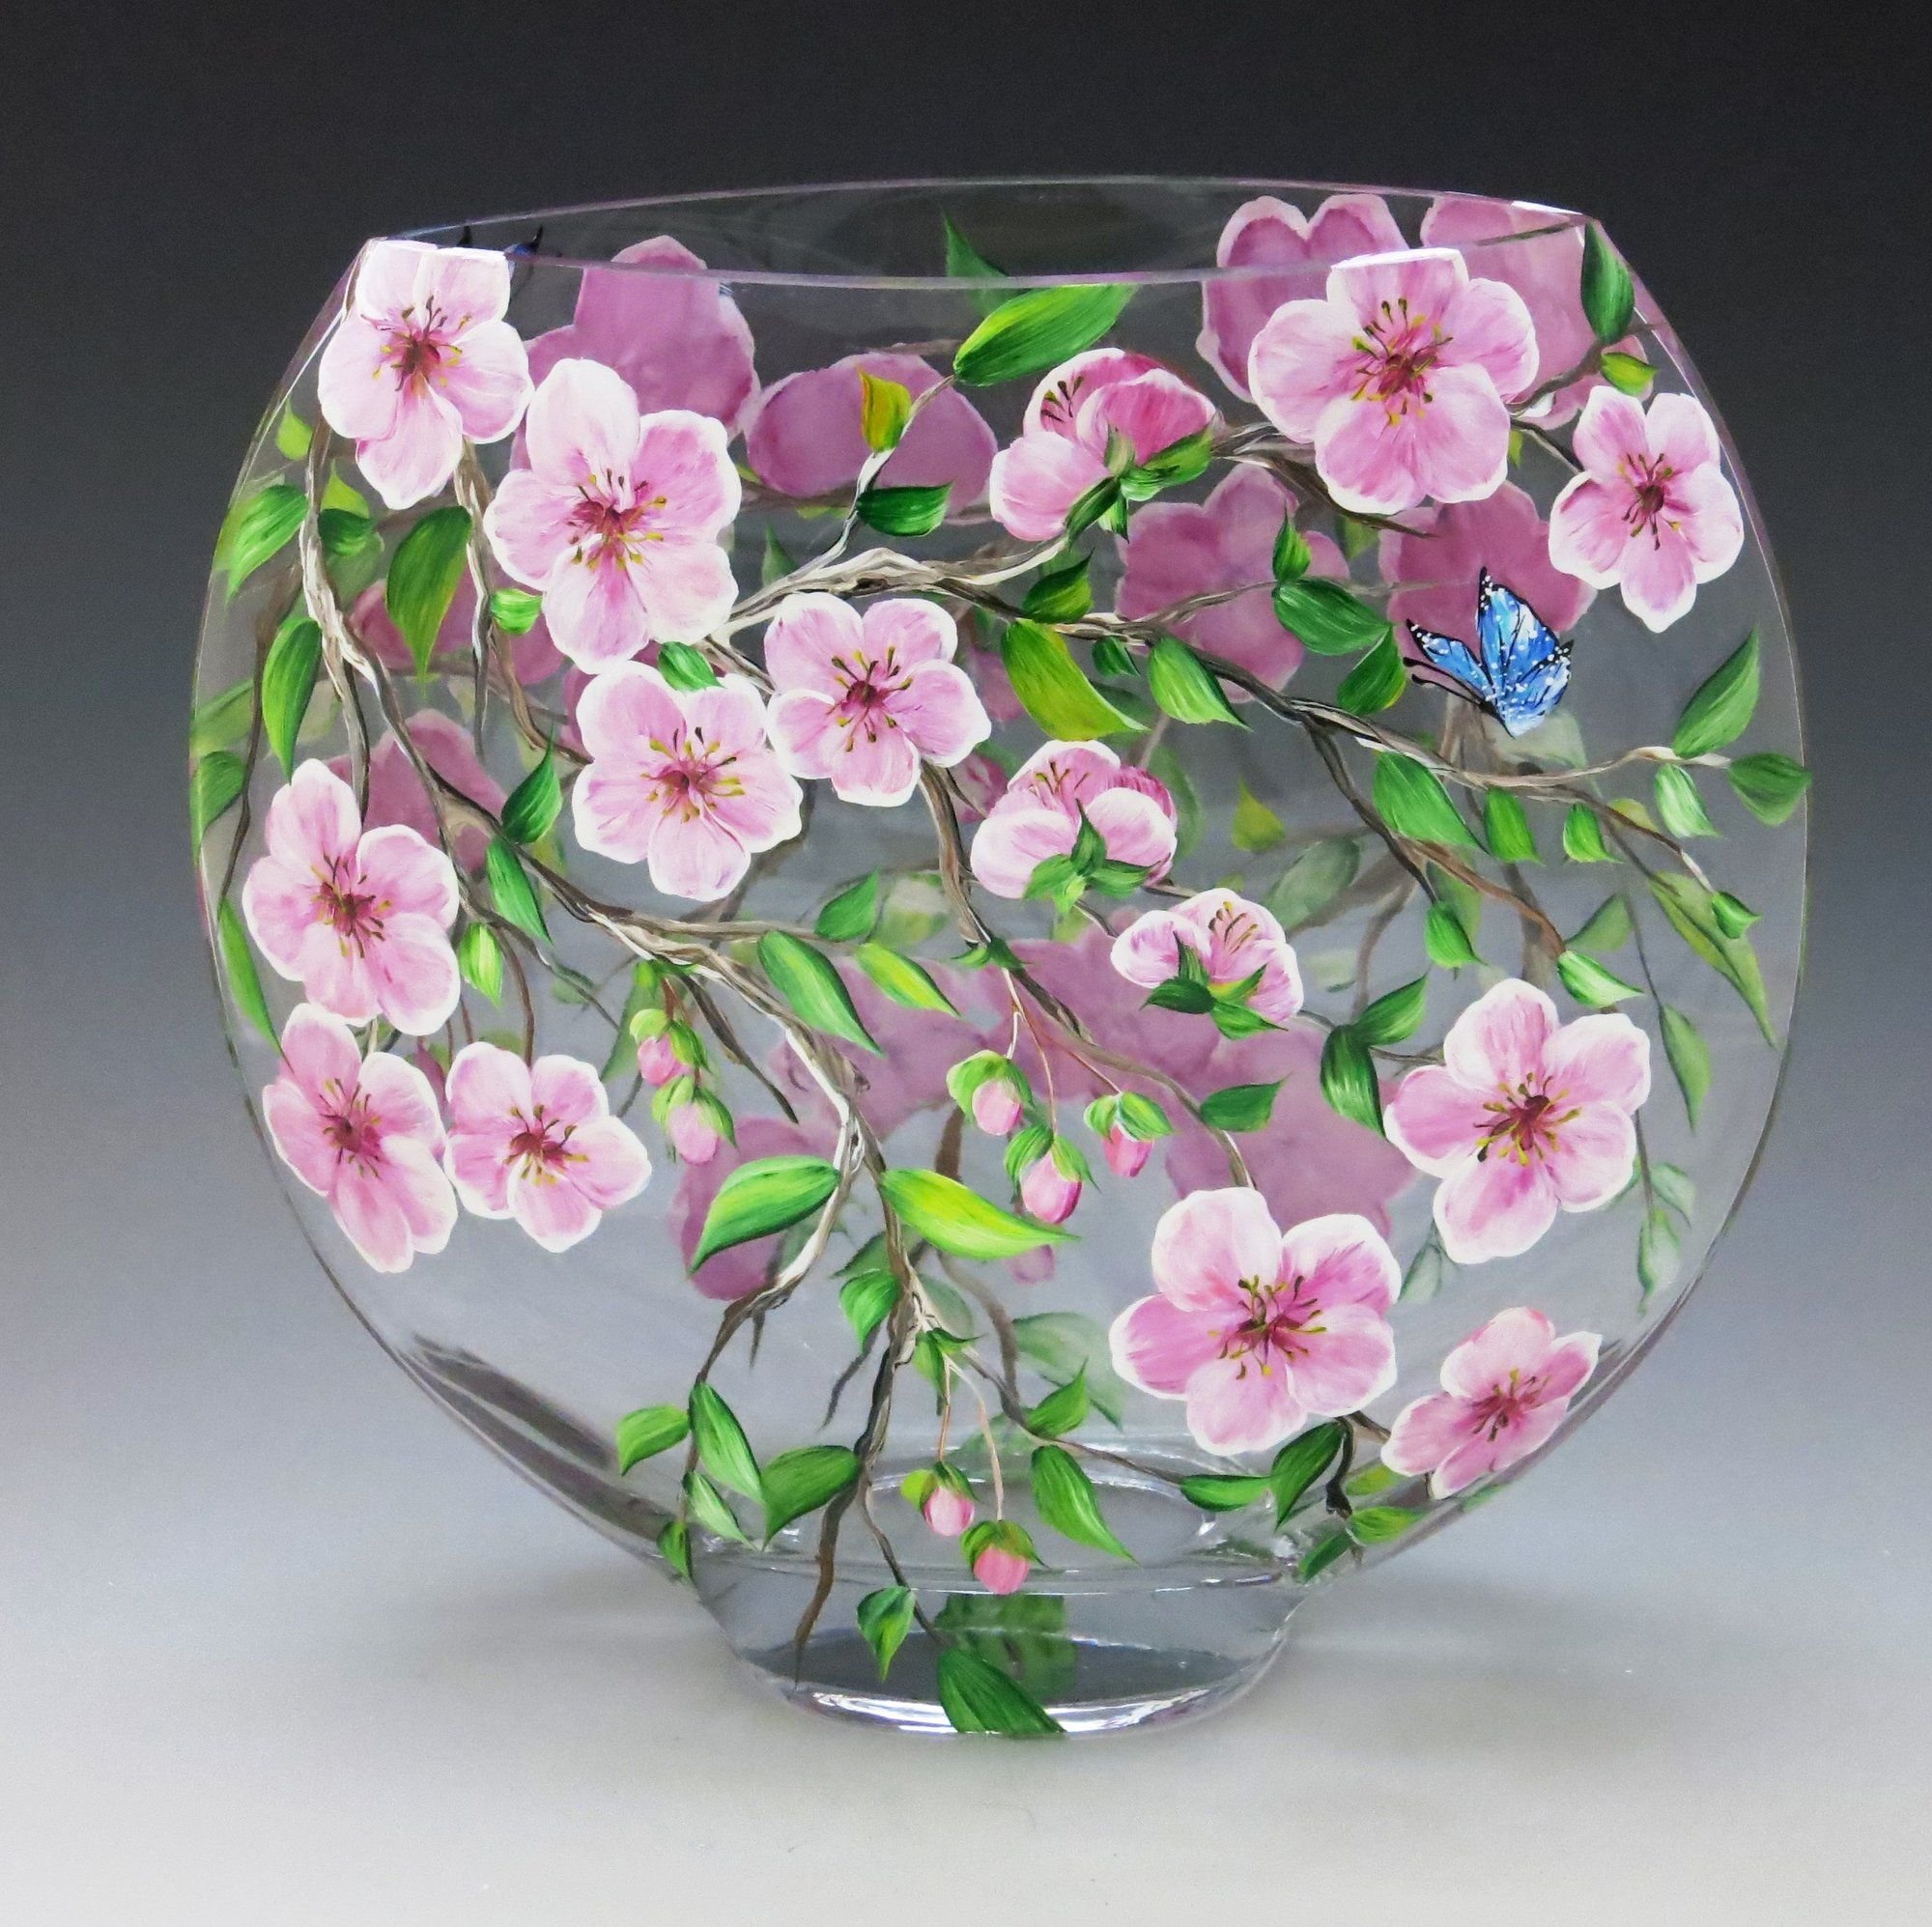 Как менять воду в розах вазе. Расписные вазы. Стеклянная вазочка. Расписываем стеклянные вазы. Роспись по стеклу ваза.